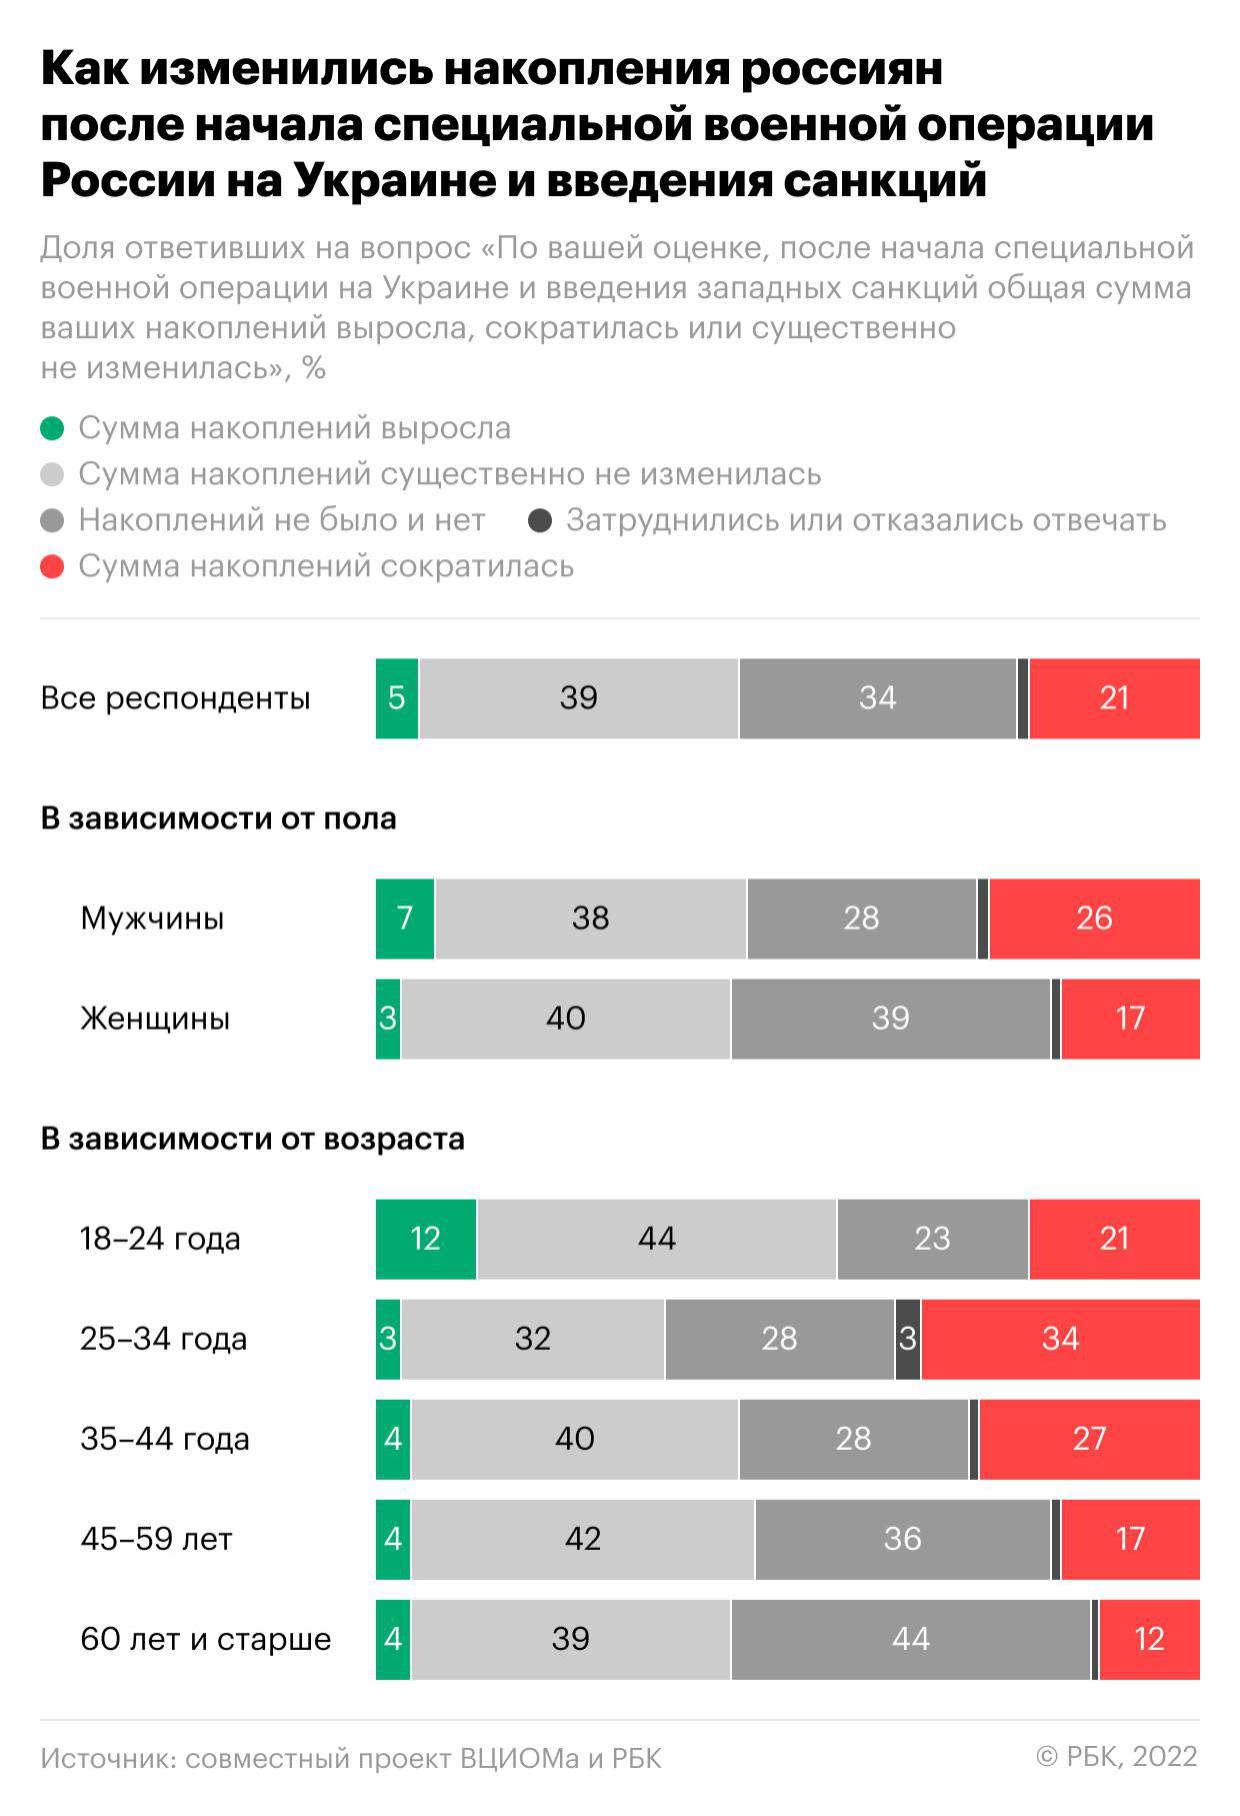 Как у россиян поменялись накопления из-за санкций. Инфографика